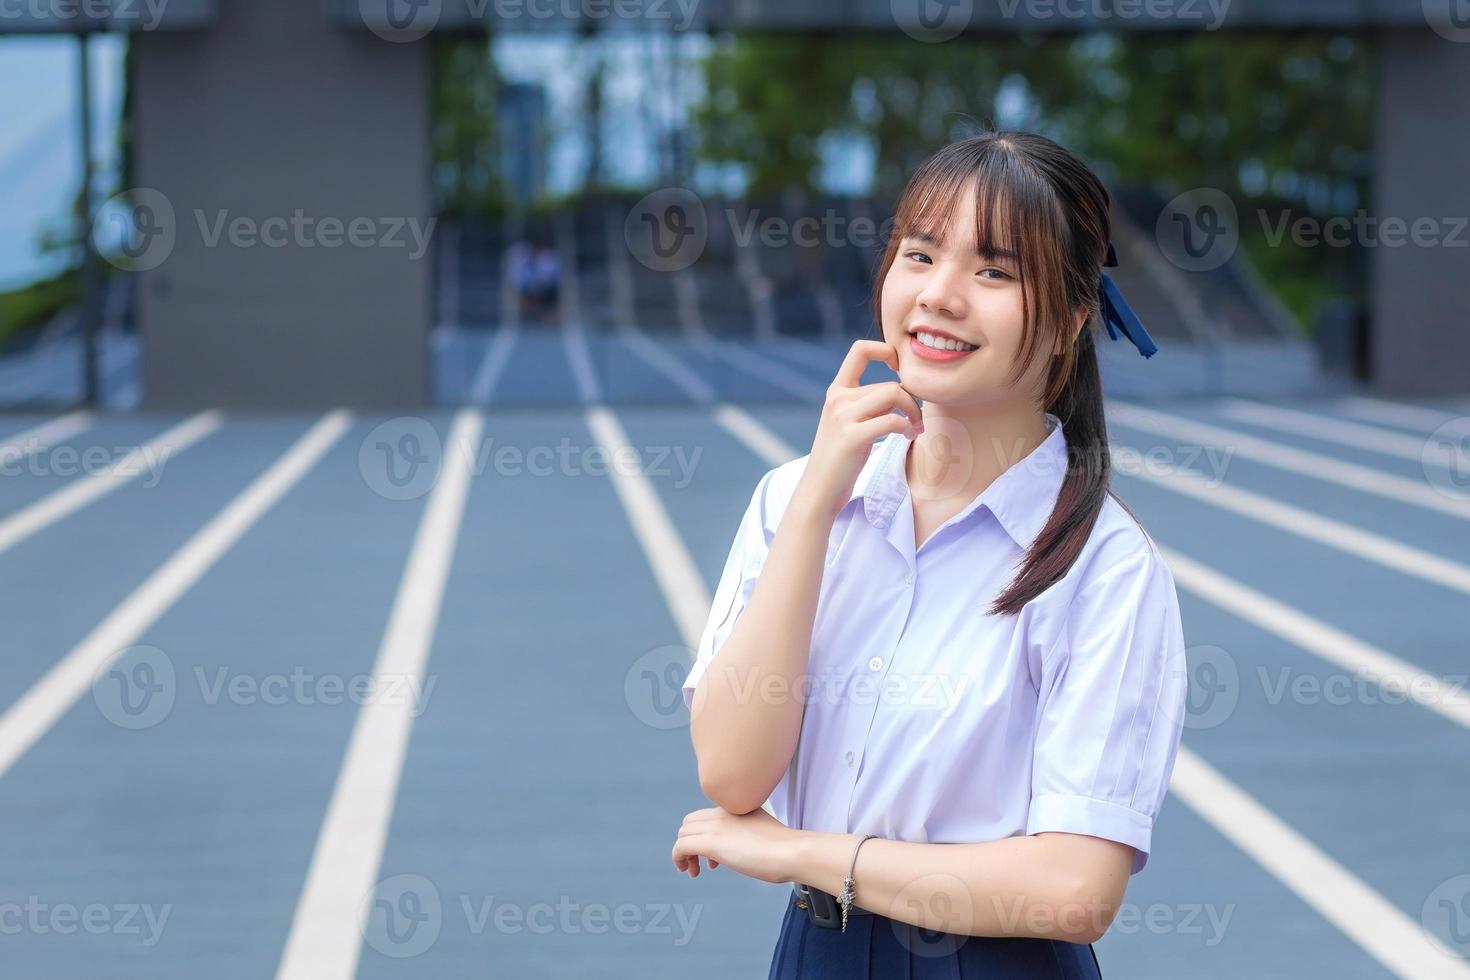 söt hög skola asiatisk studerande flicka i de skola enhetlig står och ler lyckligt medan självsäkert med de grå byggnad som bakgrund. foto